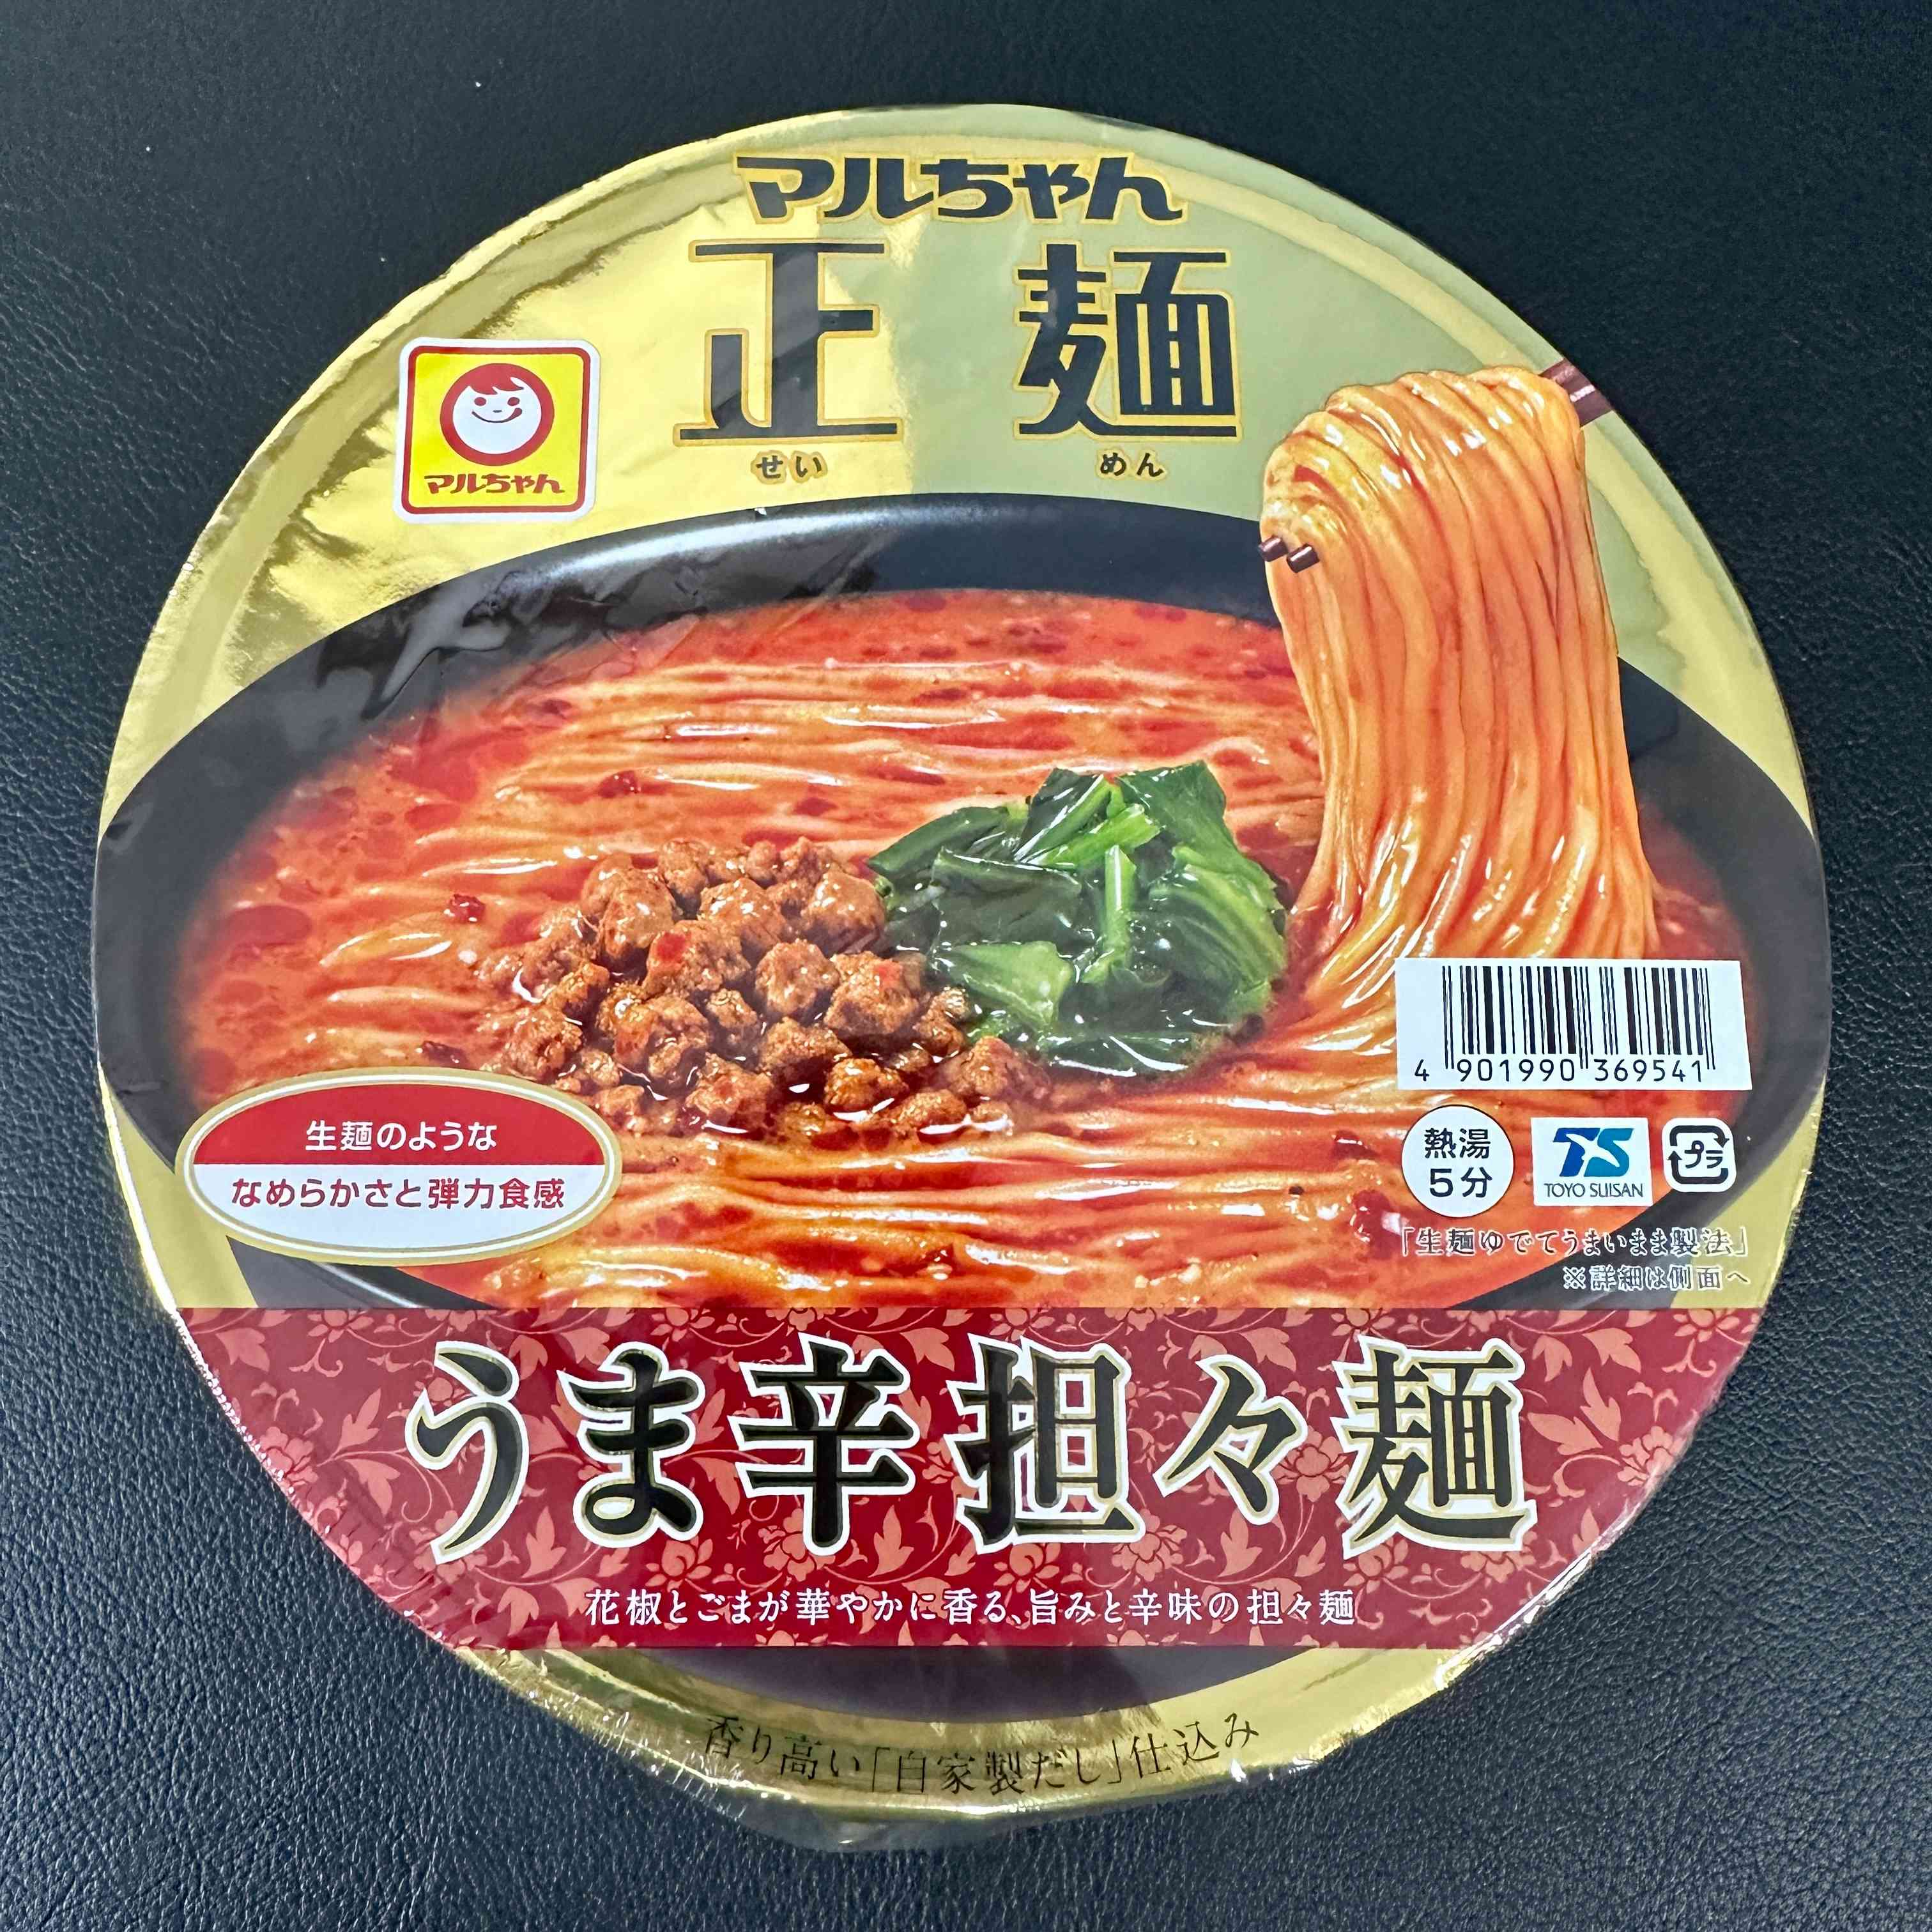 【TOYO SUISAN】Maruchan Seimen Delicious and Spicy Tan Tan Men.　1piece　126ｇ（Cup Noodles）